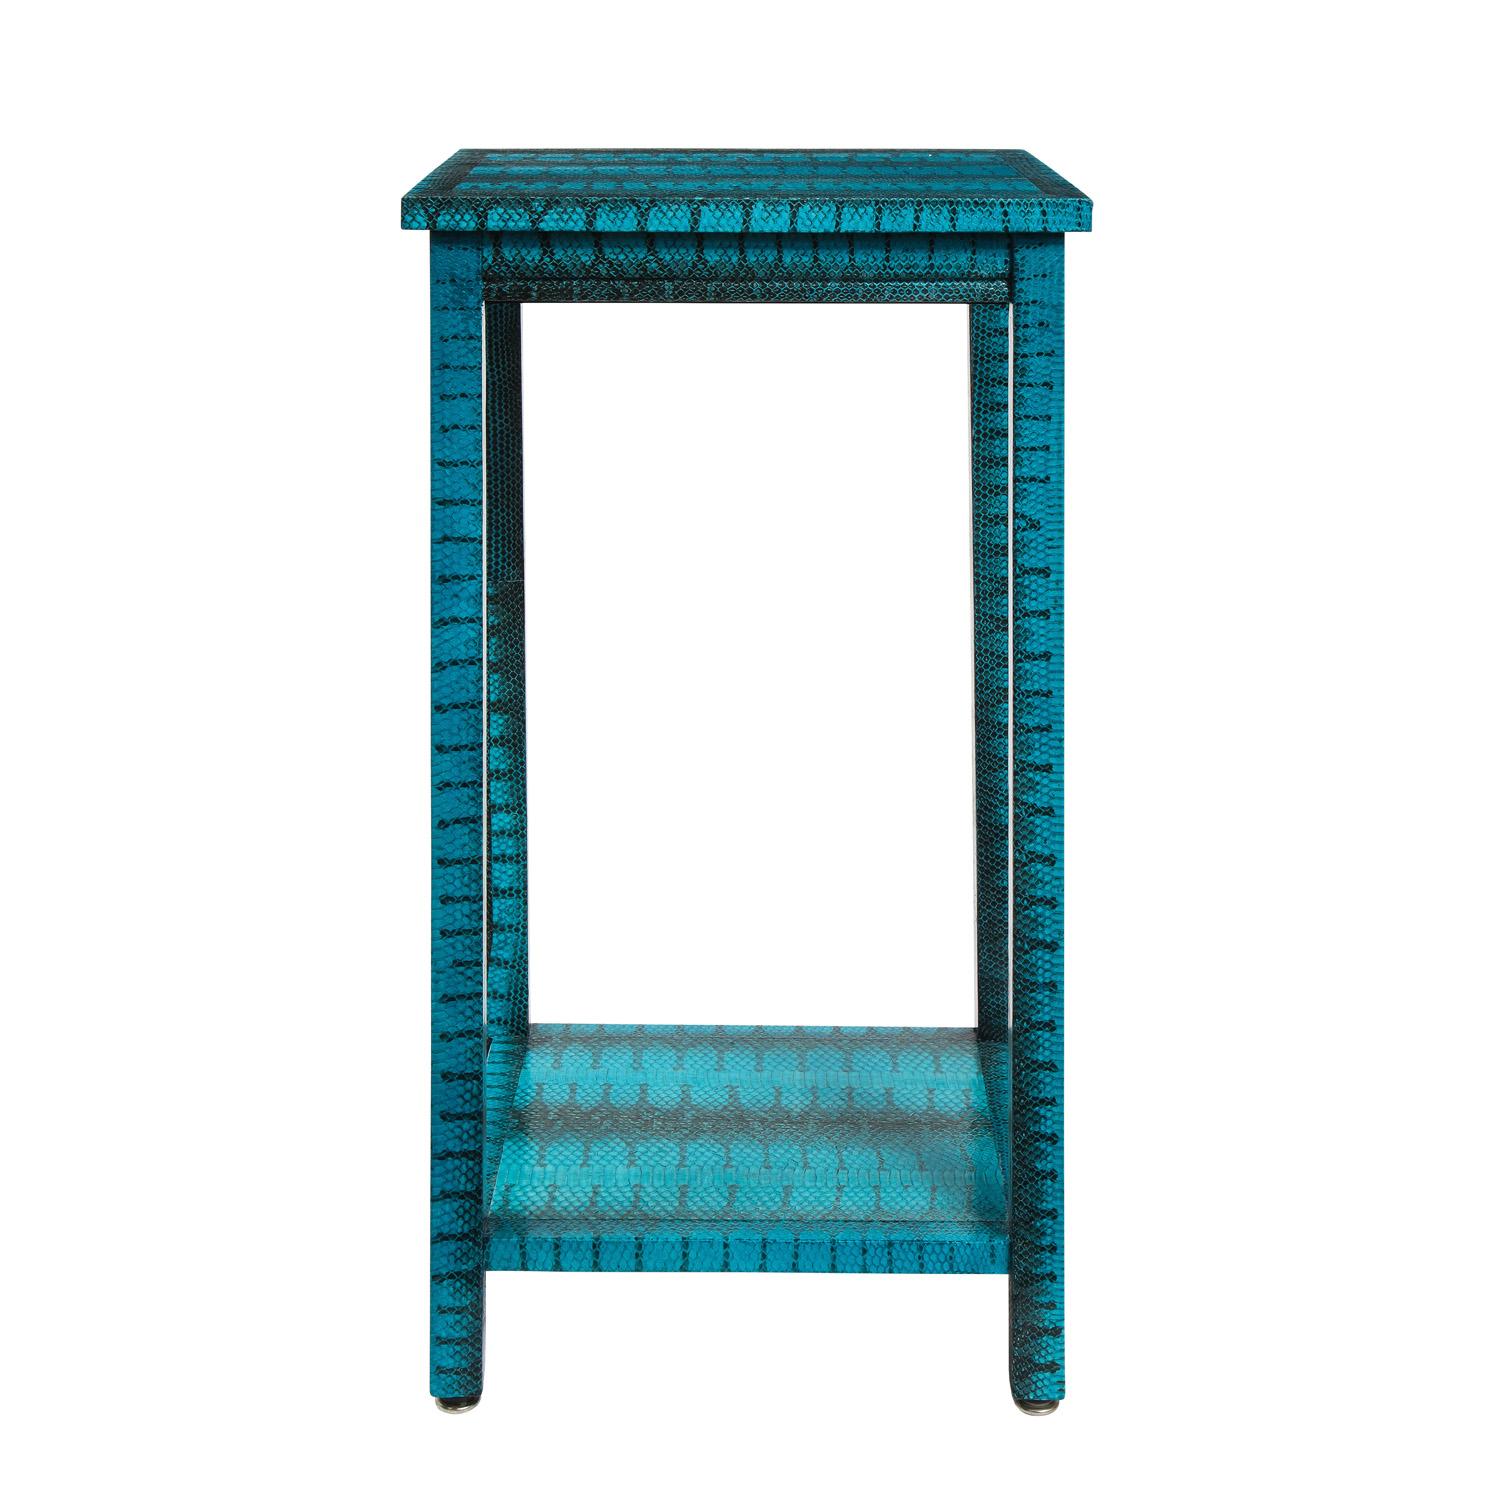 Hoher Beistelltisch mit 2 Etagen, bezogen mit exotischer blauer Schlangenhaut von Evan Lobel für Lobel Originals, American 2021. Die Farbe ist exquisit und er ist der perfekte, sorgfältig gefertigte Tisch in jedem Raum.